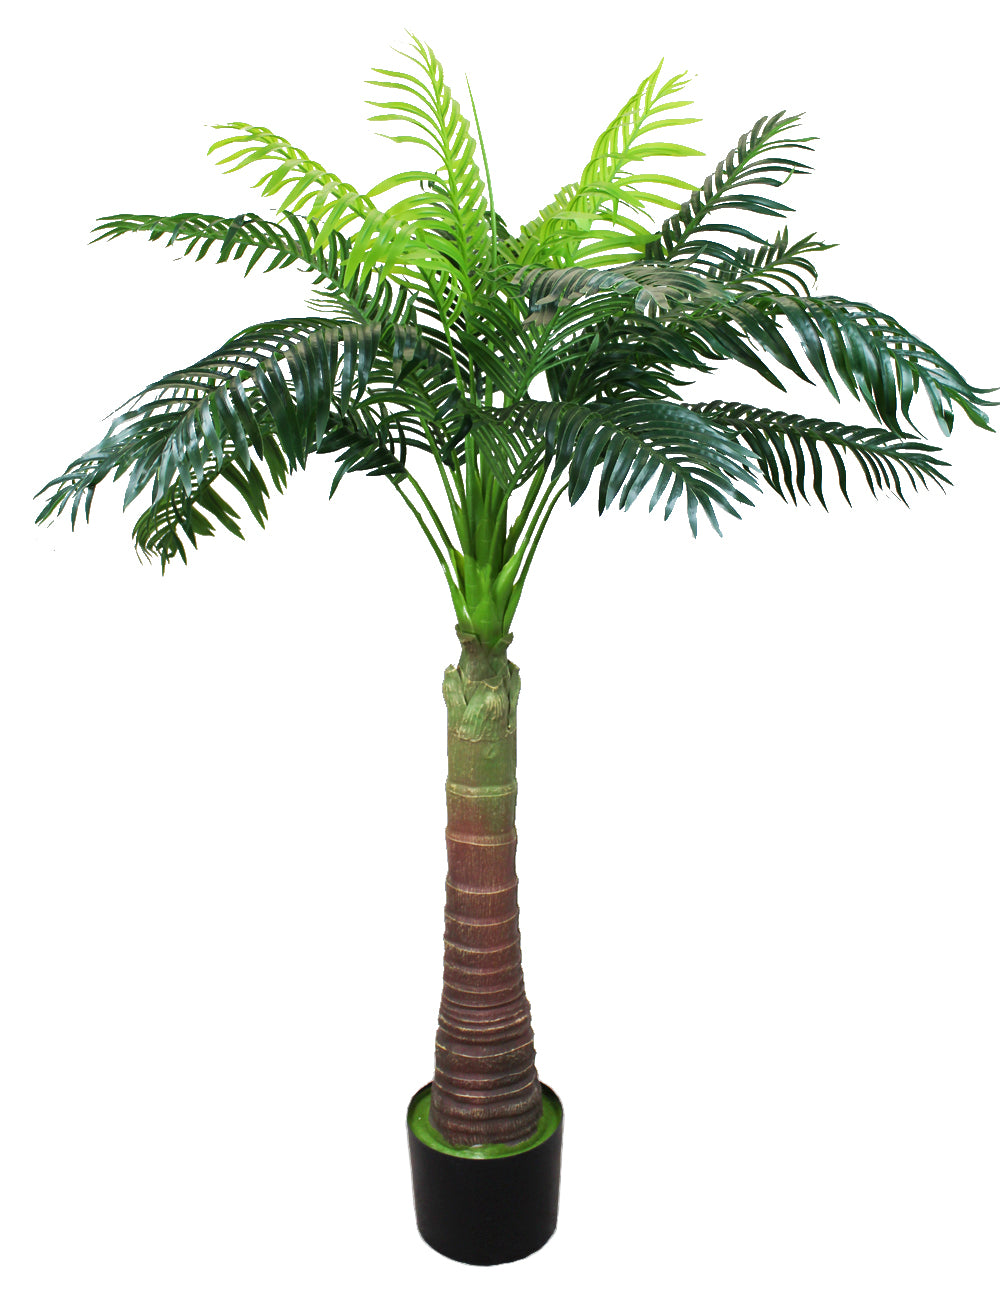 Künstliche Palme 180 cm Areca Palme Kunstpalme KP204 Kunstpflanze